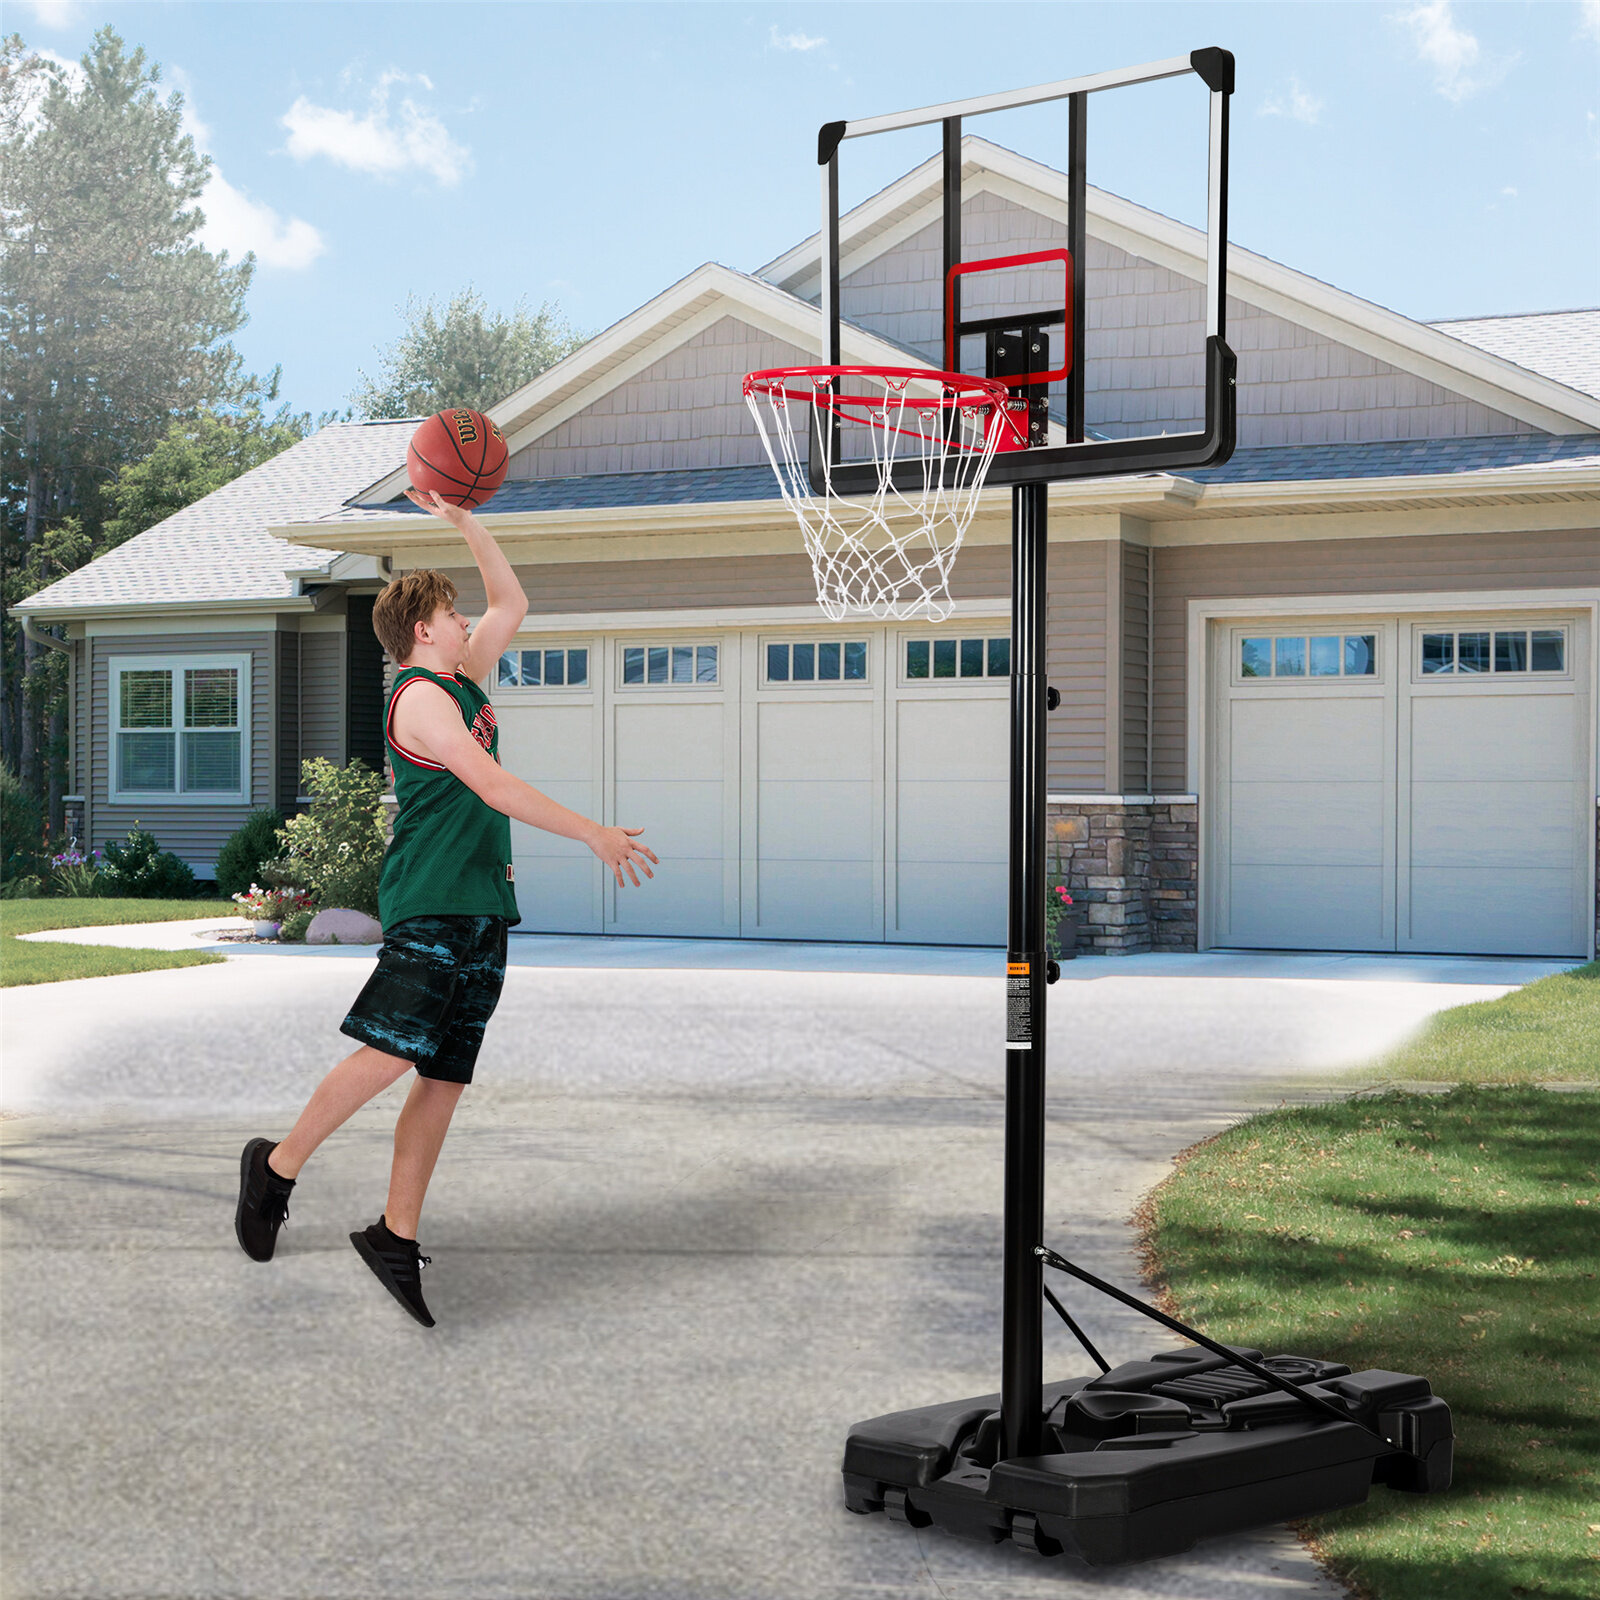 https://assets.wfcdn.com/im/81697519/compr-r85/1414/141426812/systeme-de-basketball-portatif-avec-panier-de-basketball-dexterieur-avec-ajustement-de-hauteur-de-66-a-10-pi-pour-les-jeunes-et-les-adultes.jpg